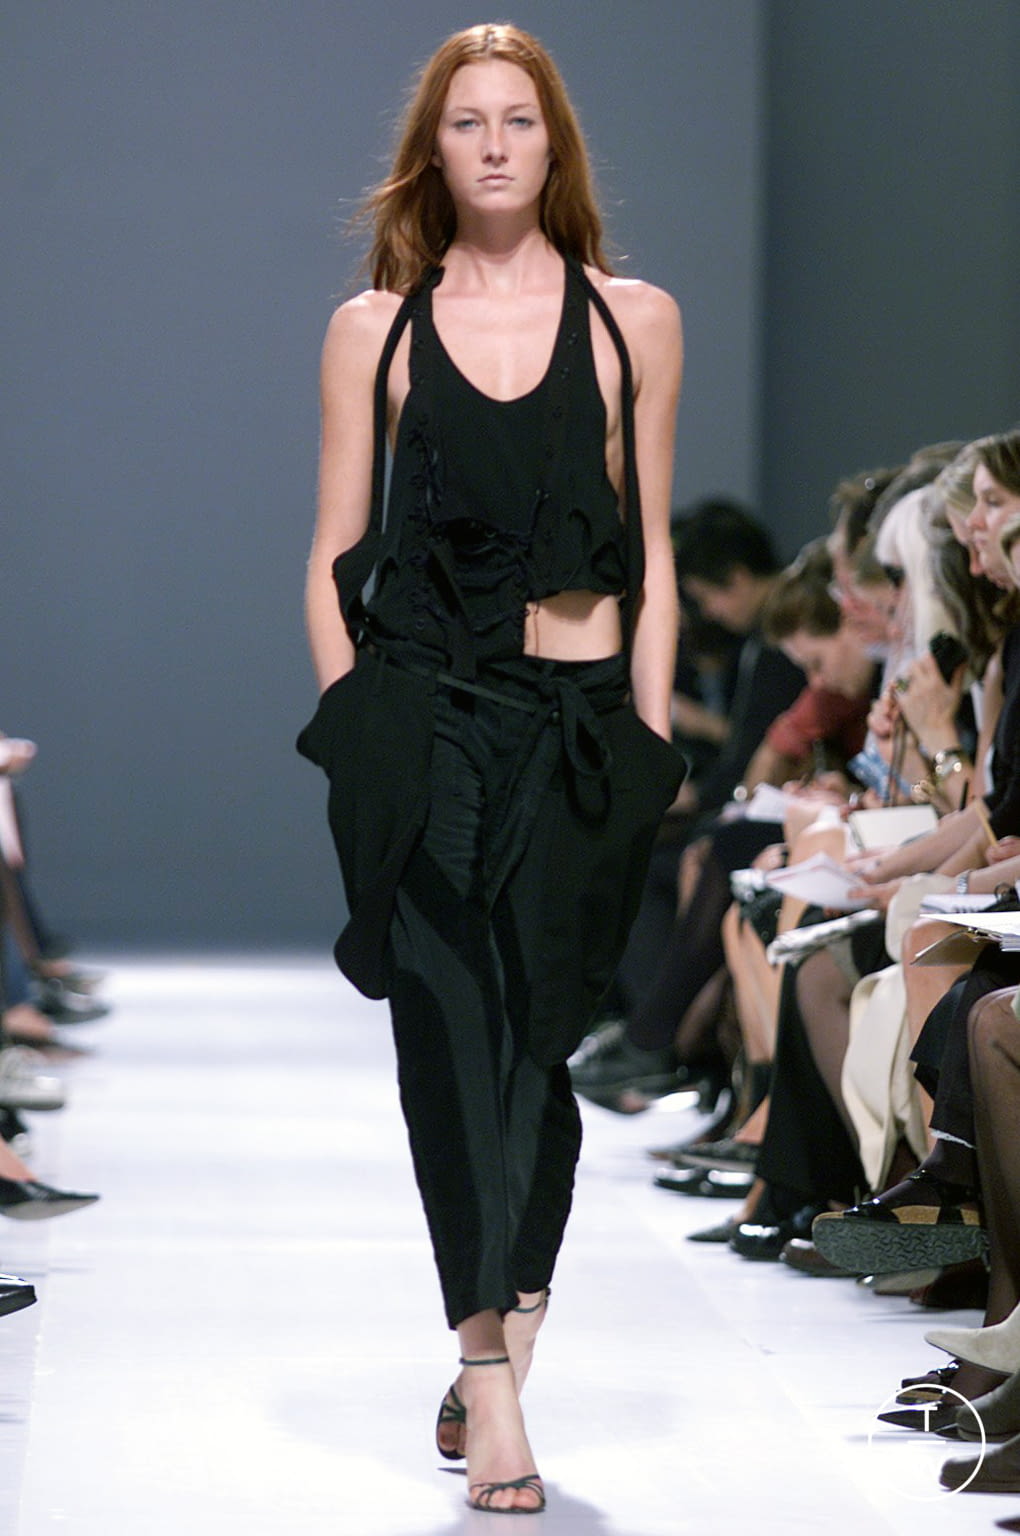 Christian Dior Resort 21 womenswear #83 - Tagwalk: The Fashion